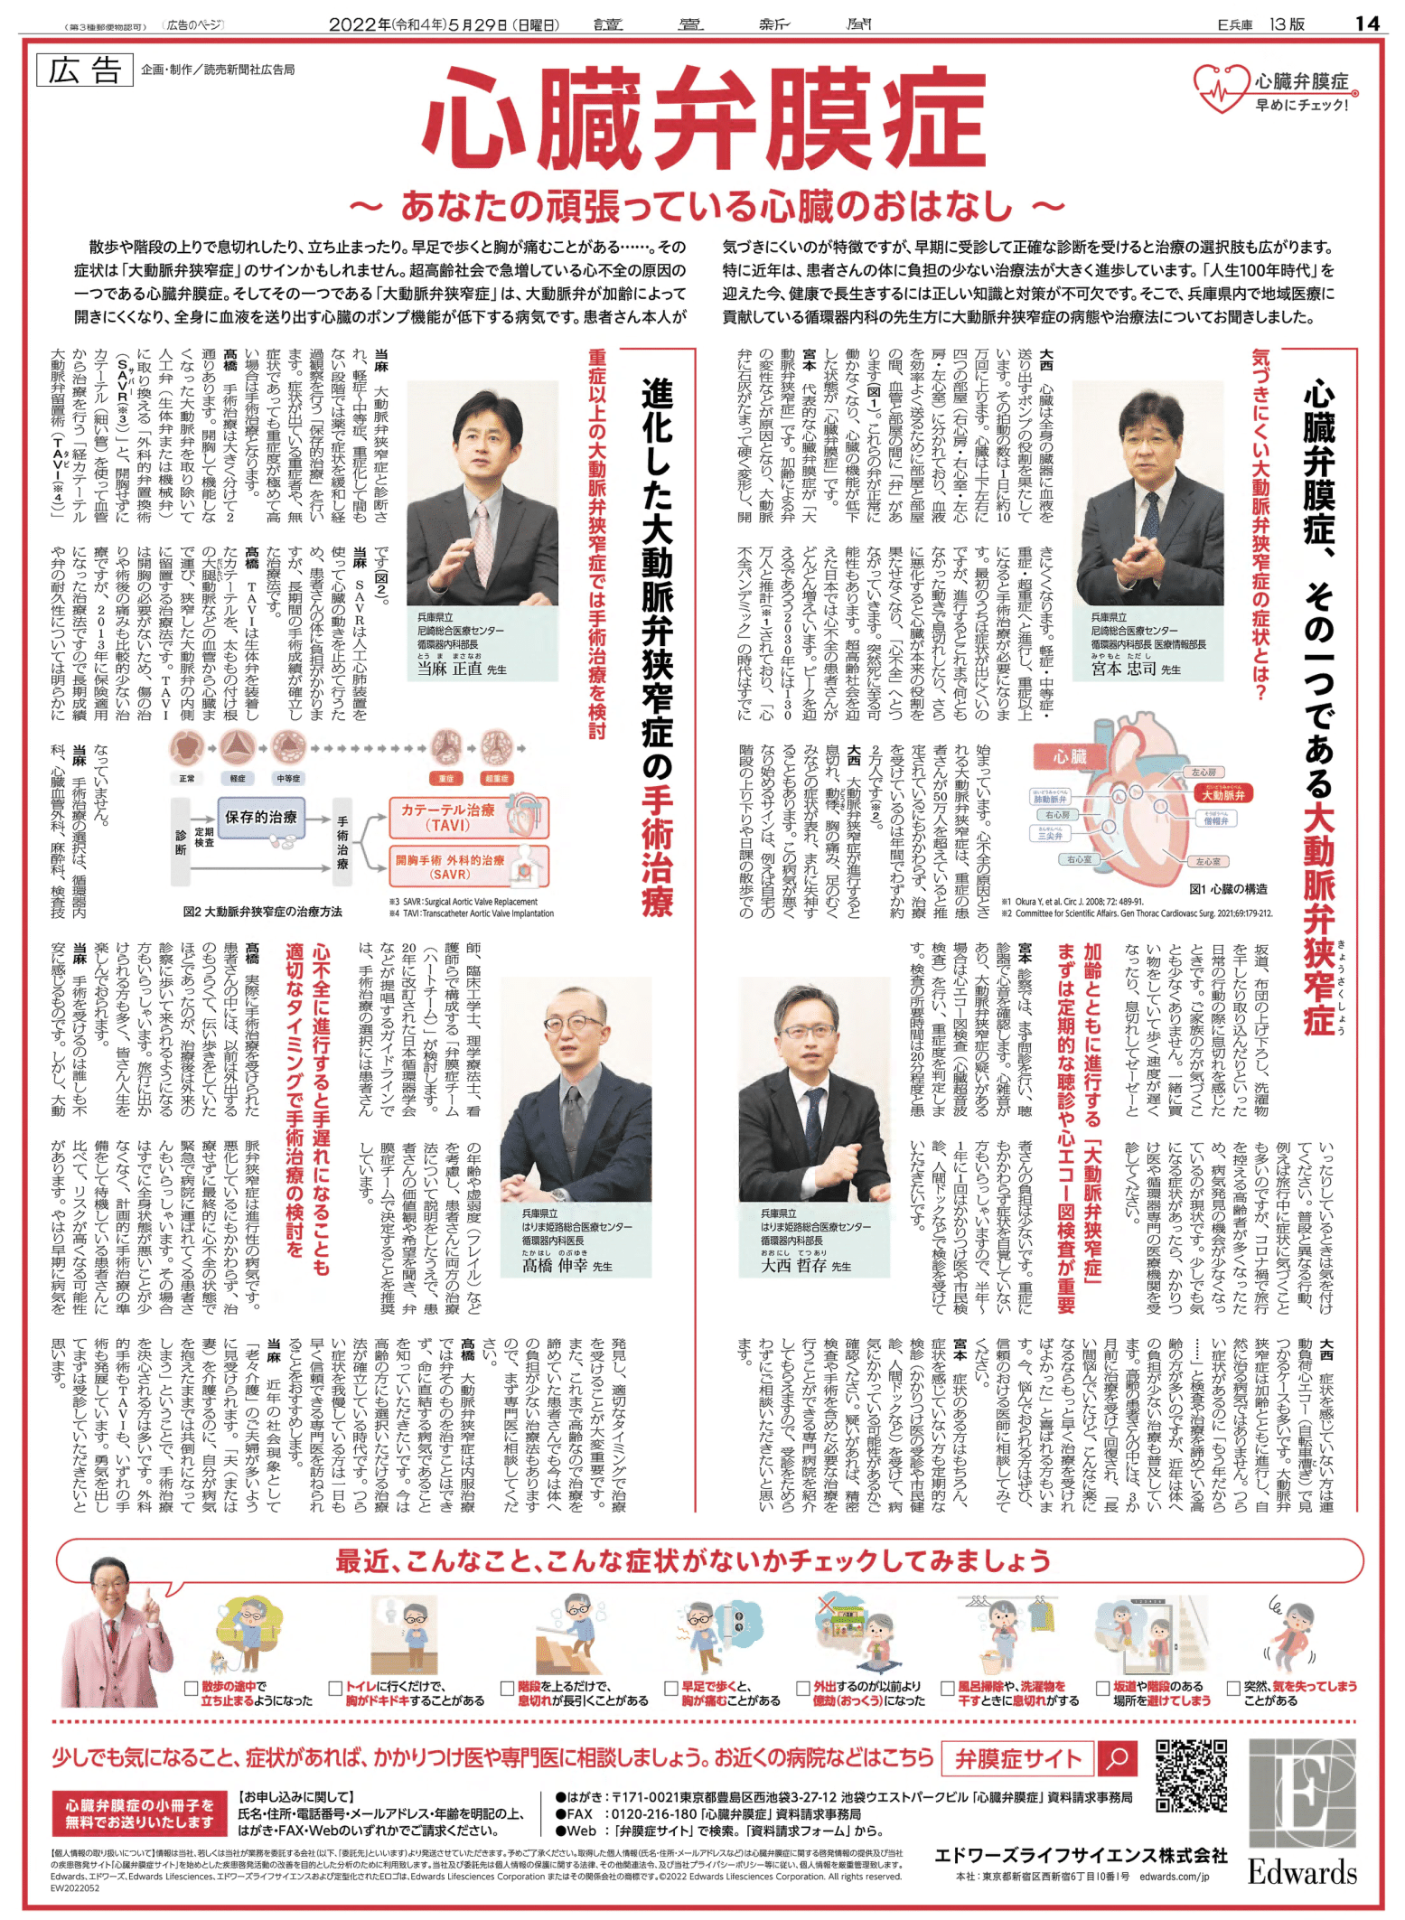 5/29　読売新聞記事広告に循環器内科　大西医師・高橋伸幸医師が出演しました。